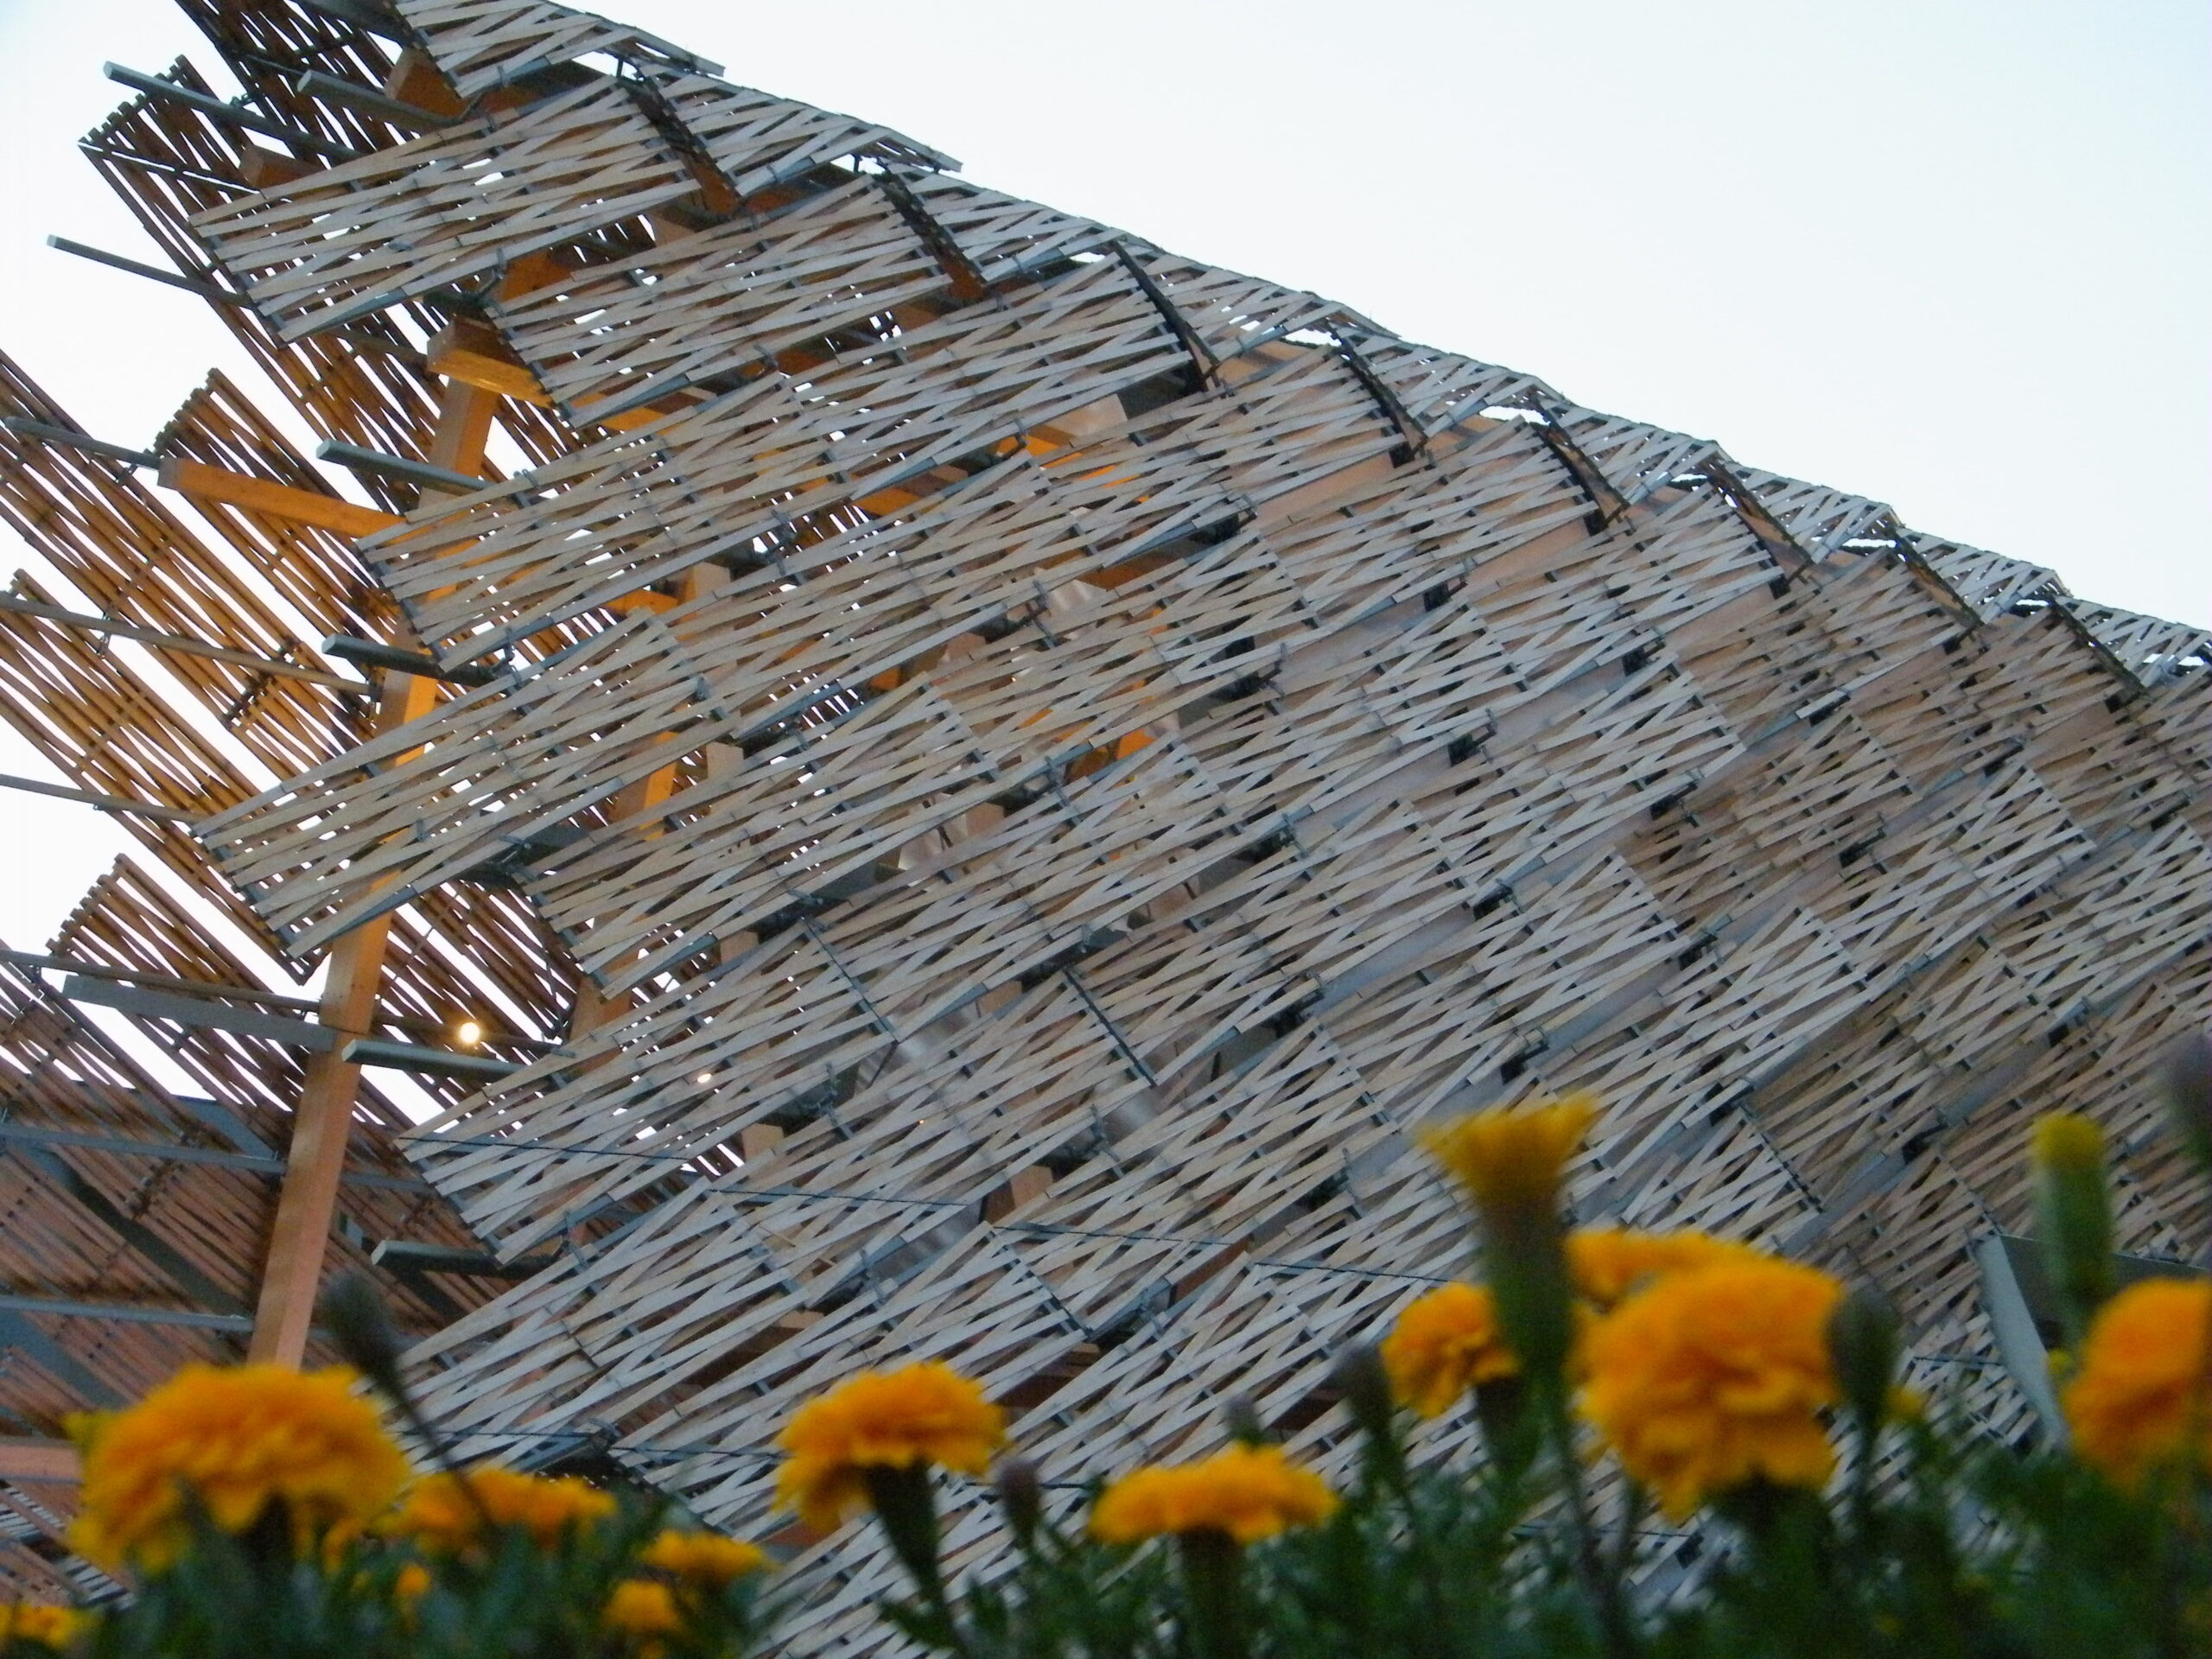 Drewniany pawilon Chinna wystawę Expo 2015 w Mediolanie